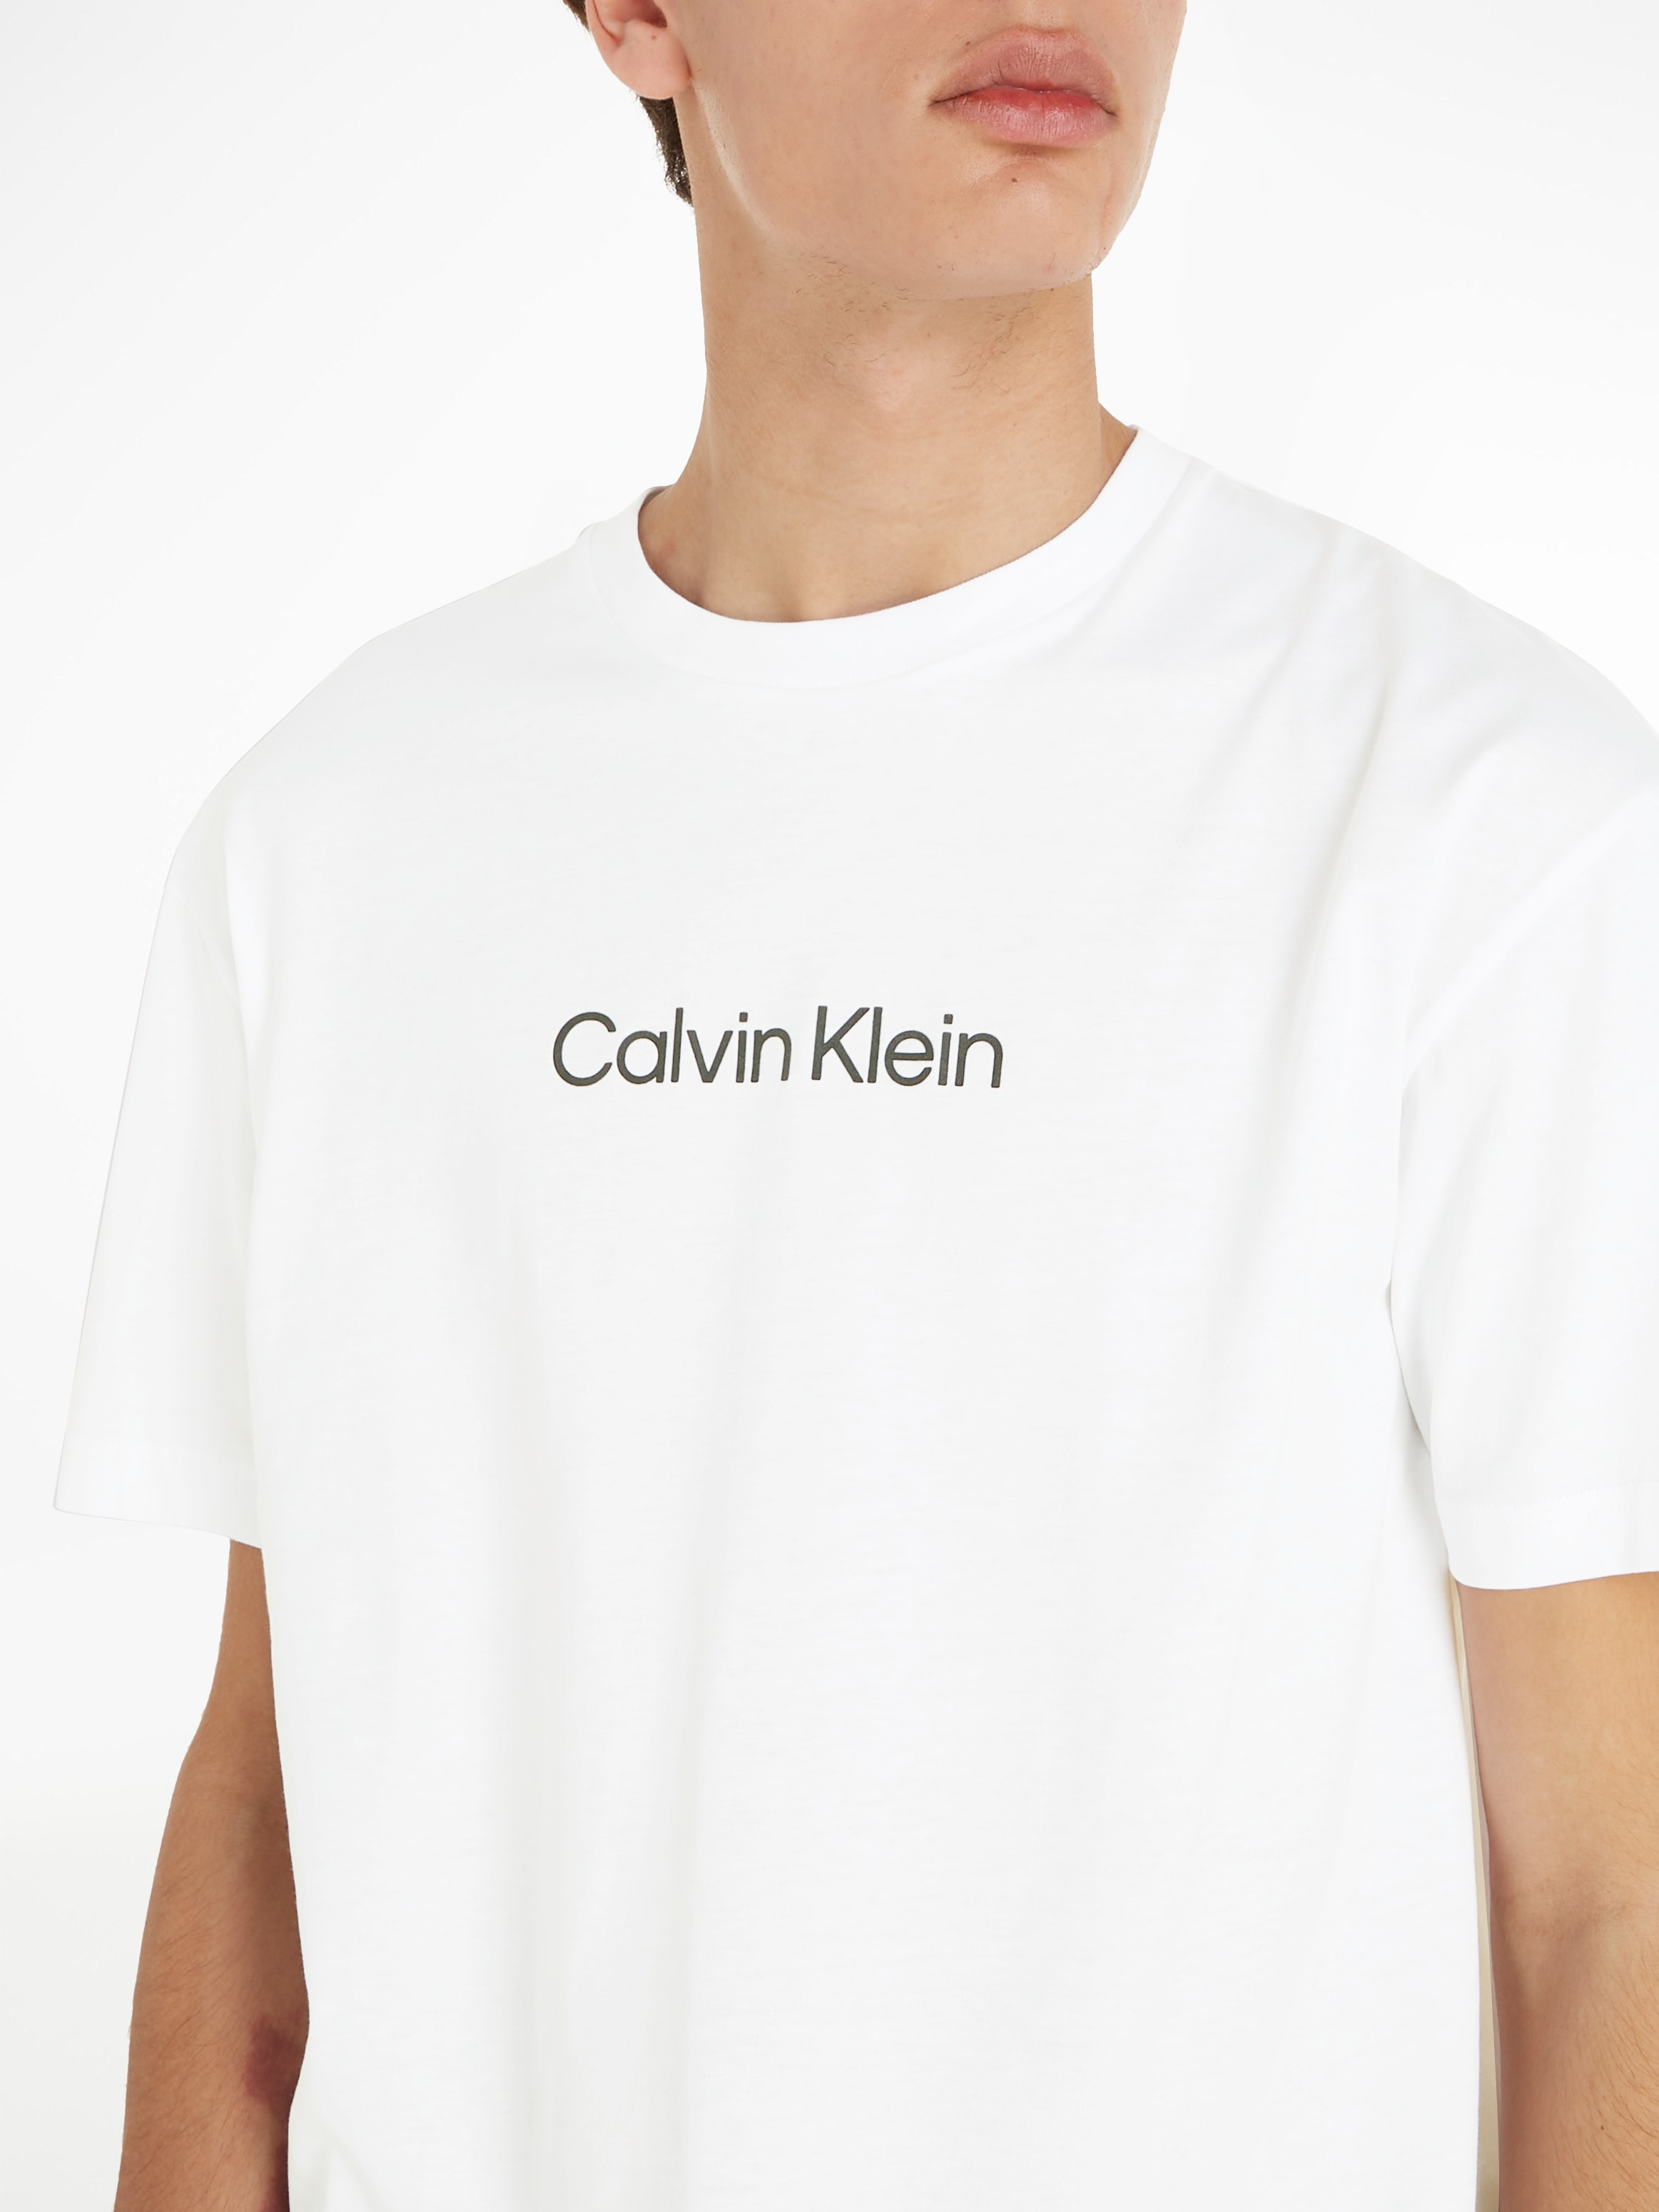 Calvin Klein aufgedrucktem T-SHIRT«, Markenlabel COMFORT mit T-Shirt »HERO ♕ LOGO bei